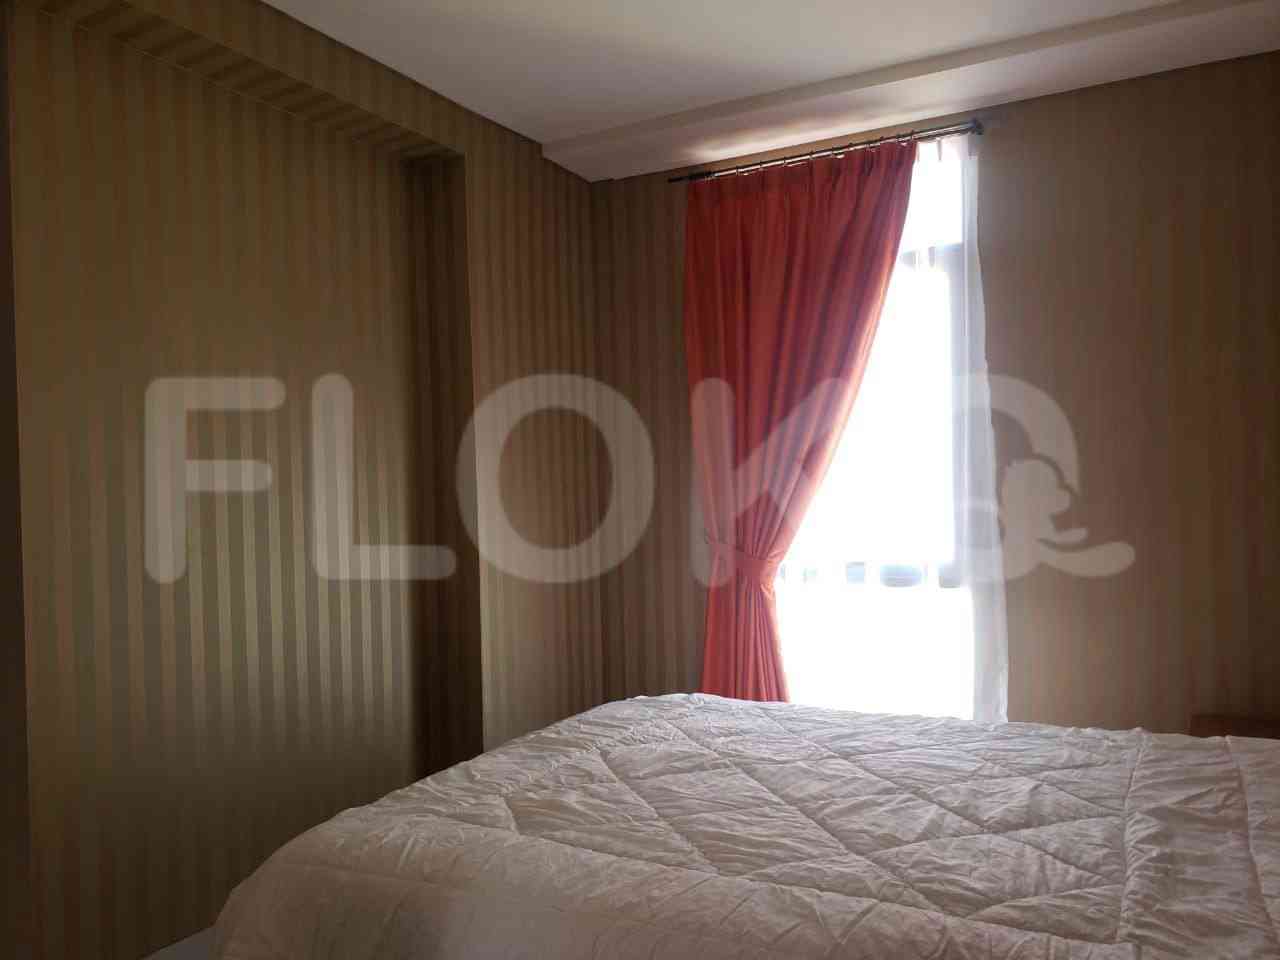 1 Bedroom on 18th Floor for Rent in Pejaten Park Residence - fpe83c 1